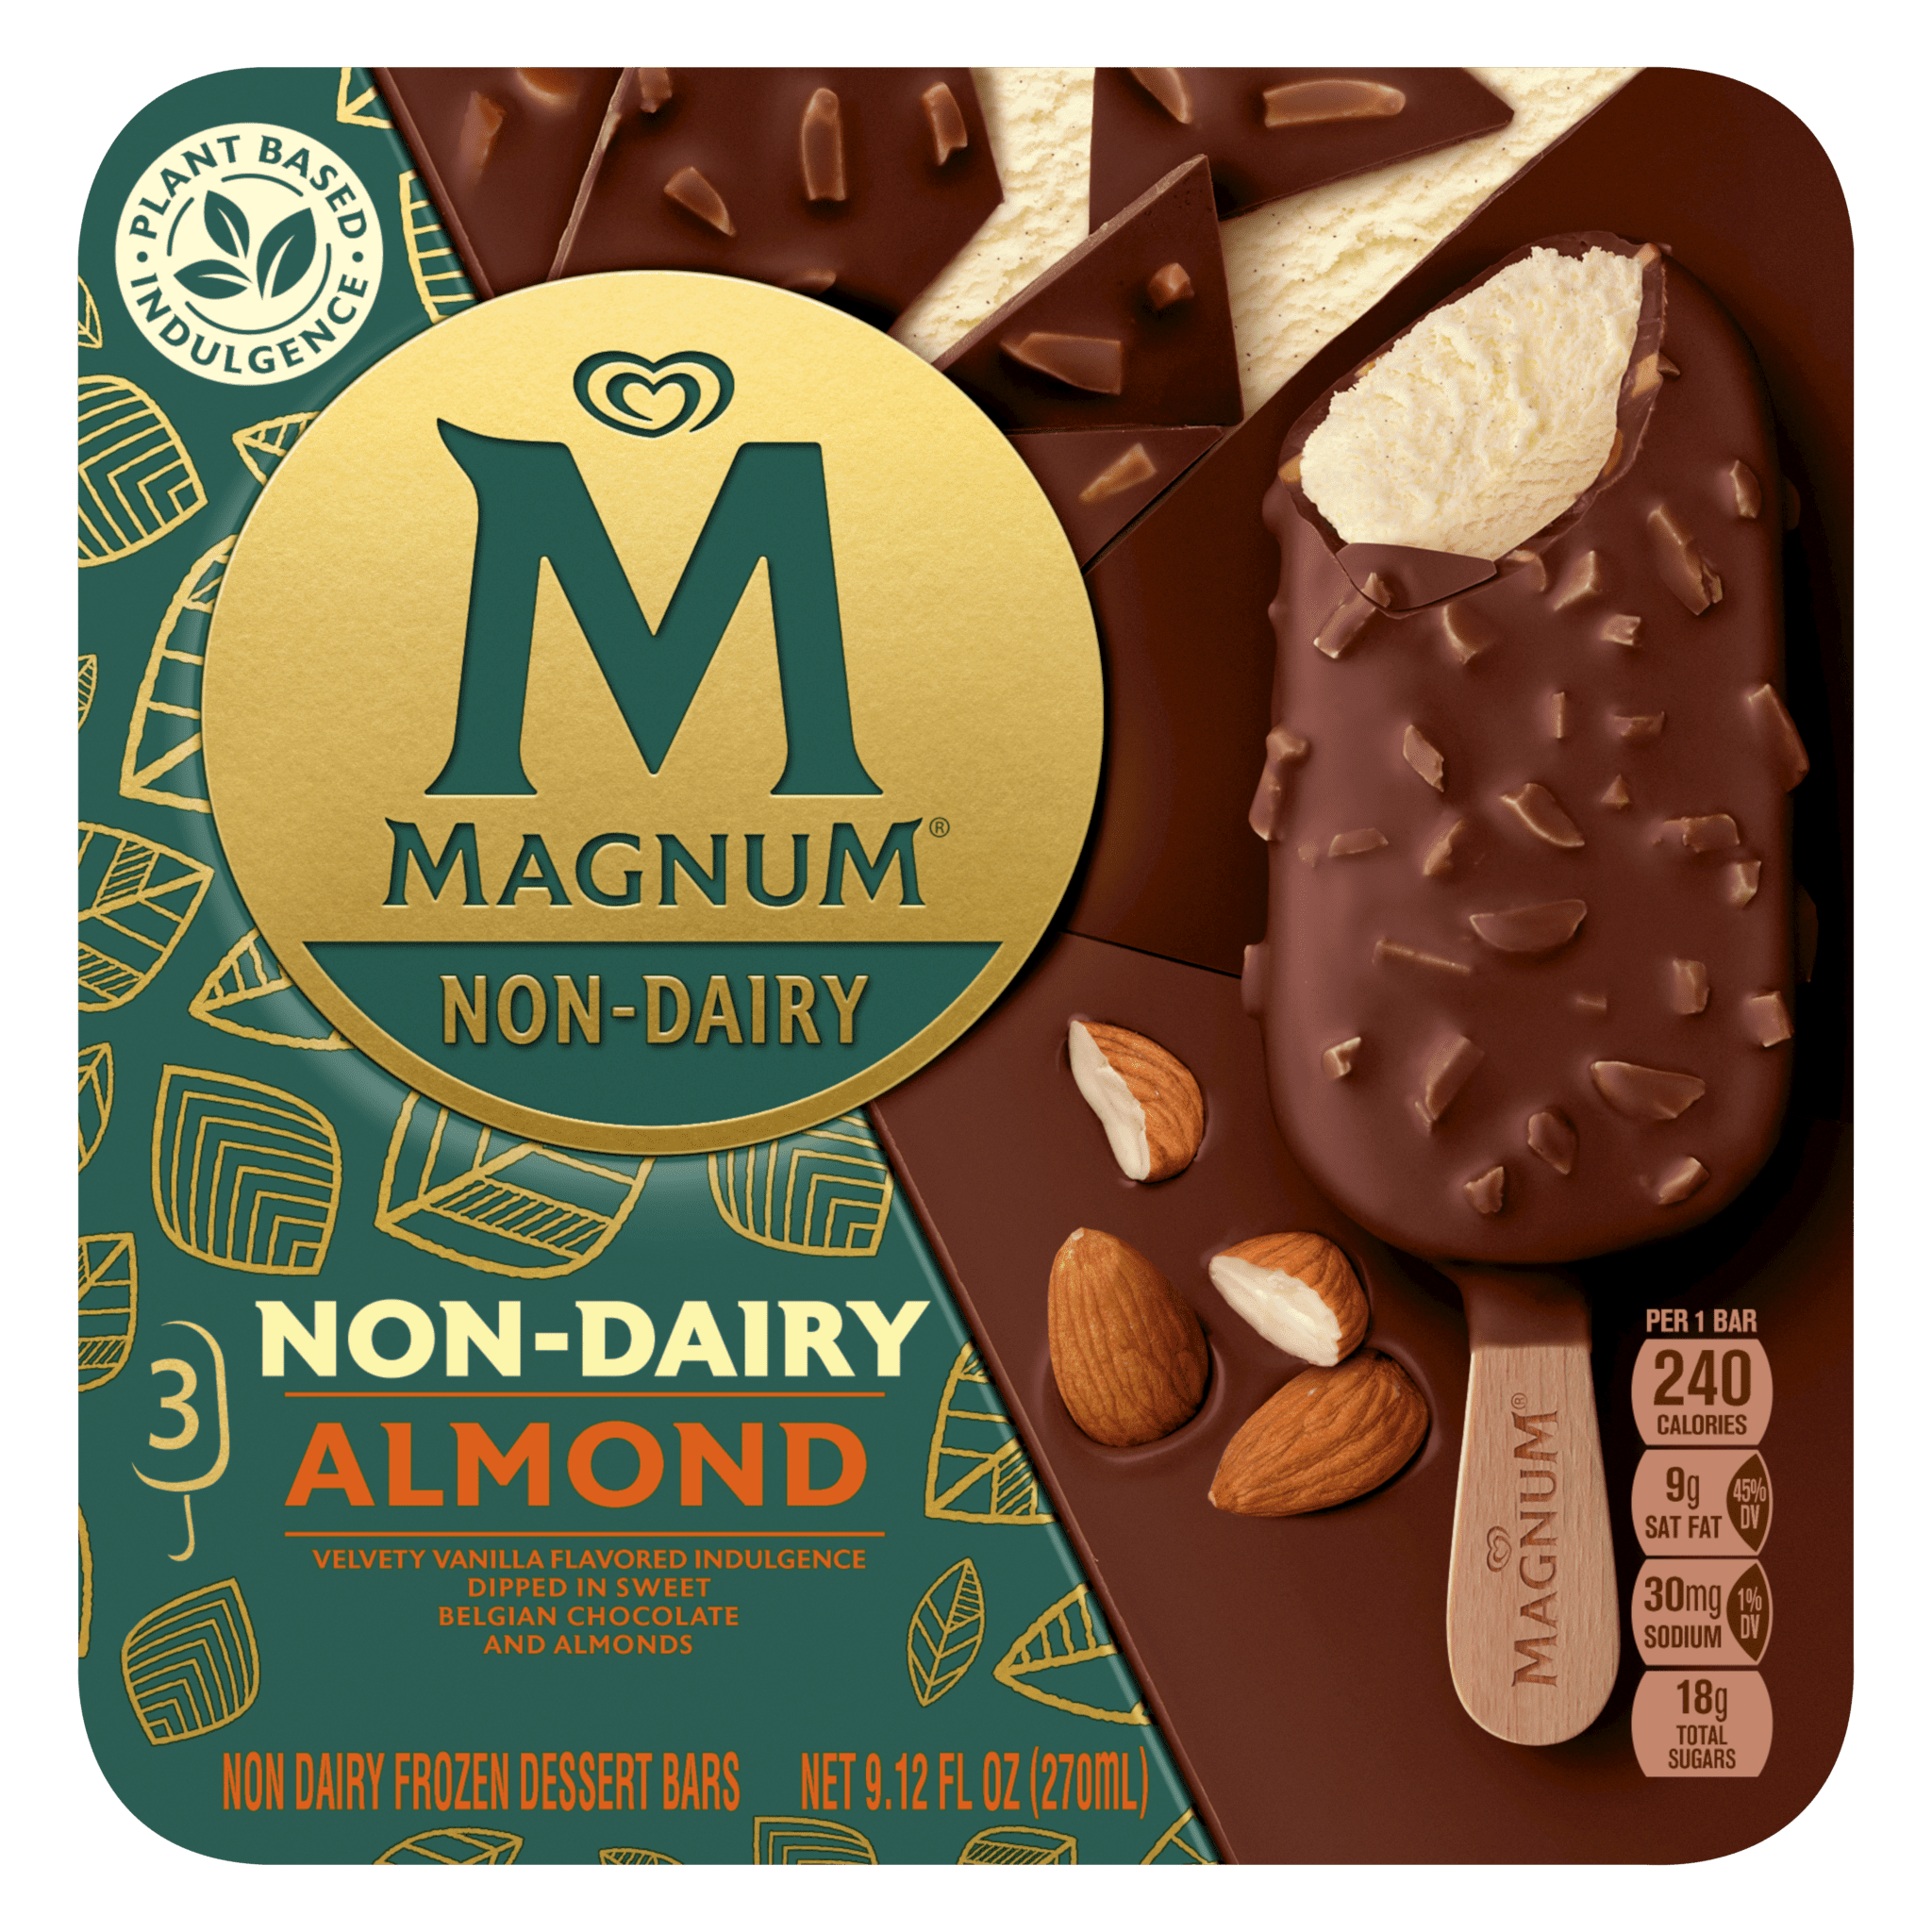 Magnum Vegan Almond Hpk 3 stk. – 10 ein í pk.